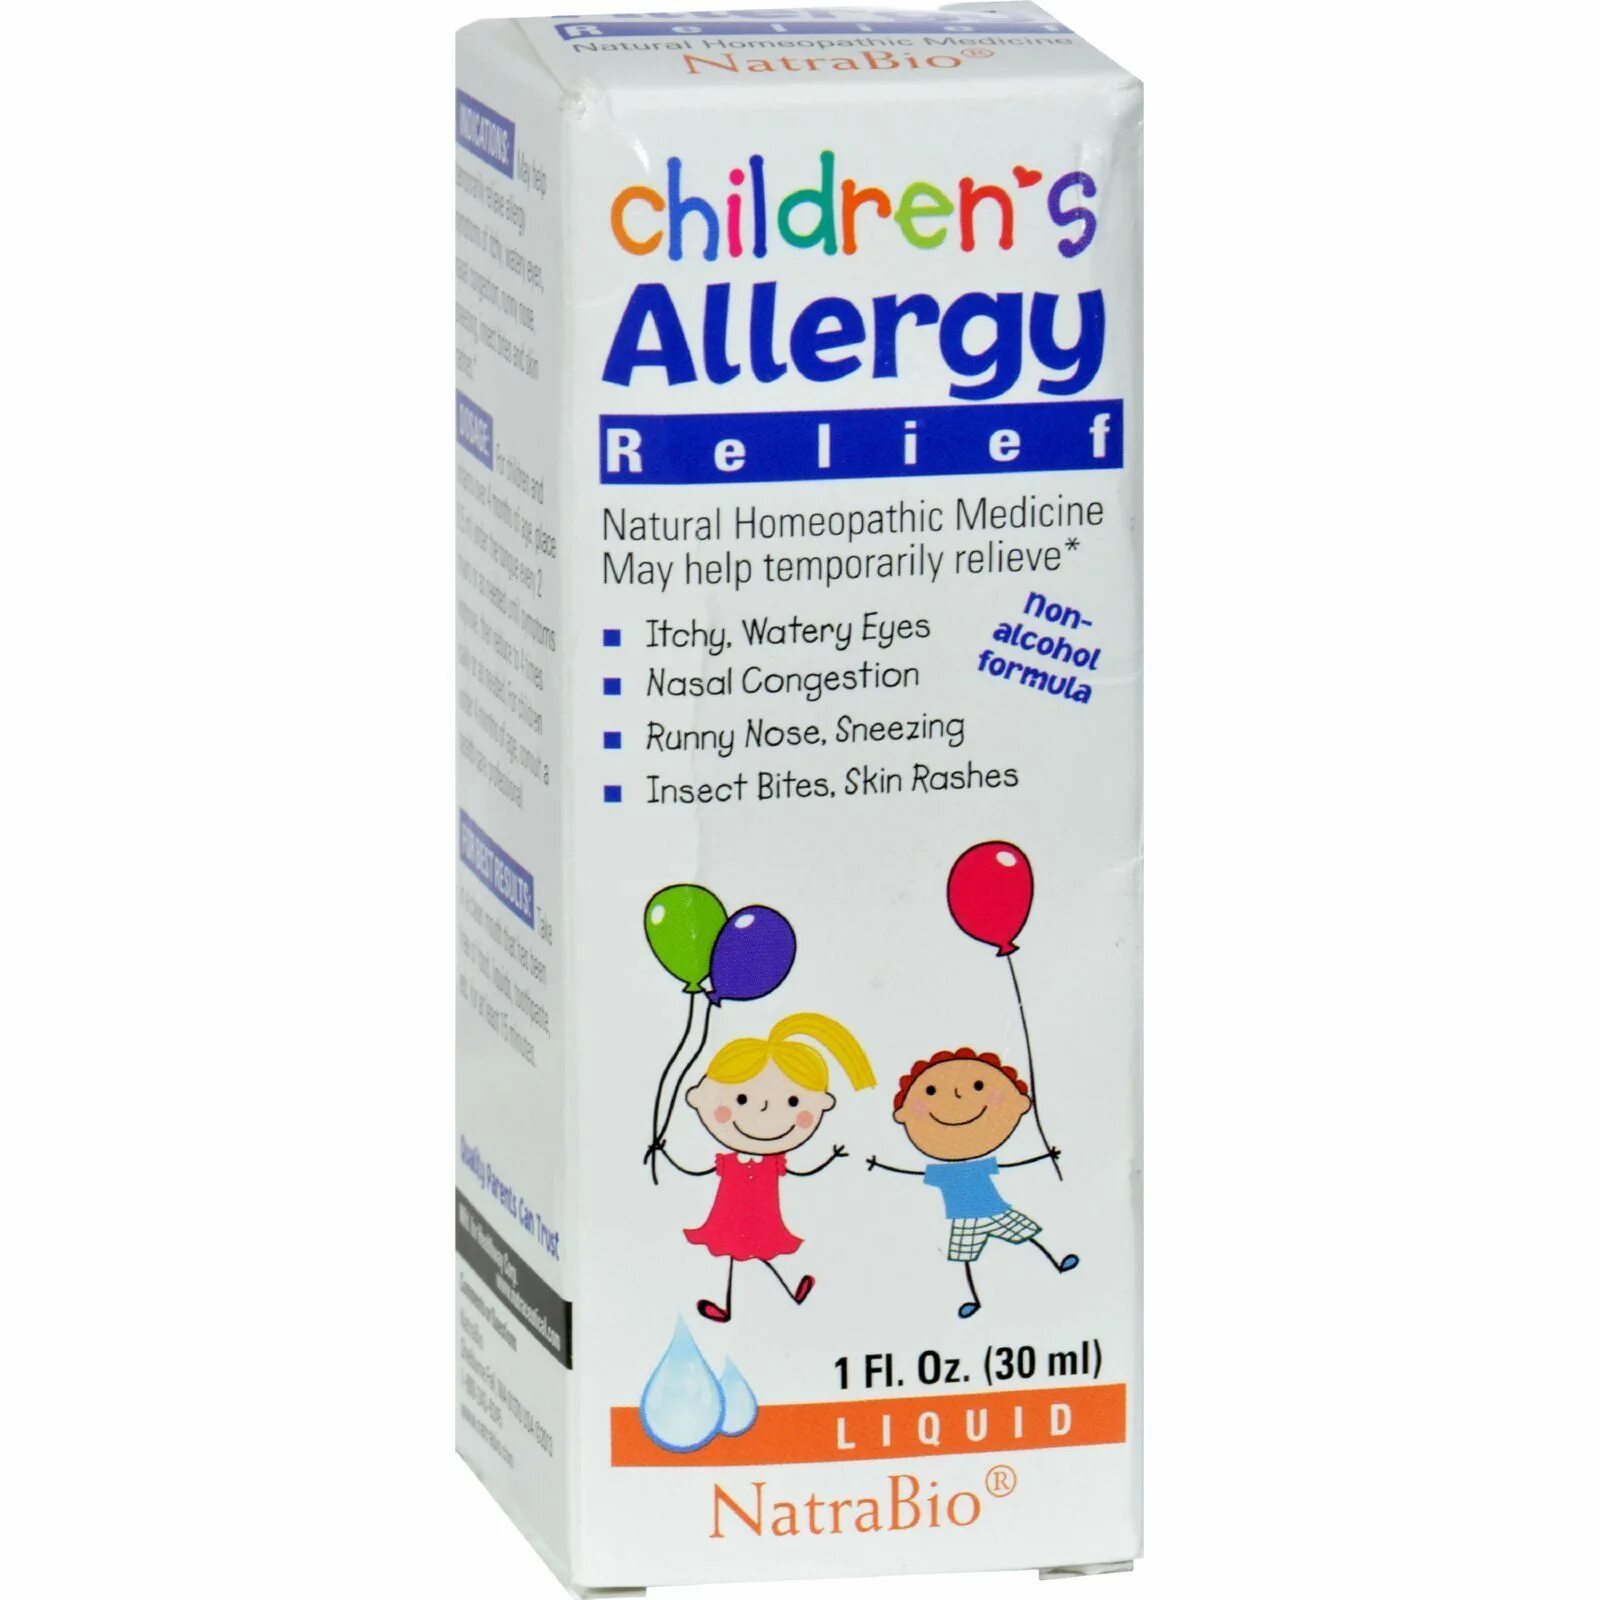 NATRABIO children's Cold and Flu Relief. Children's Cold Flu Relief. NATRABIO-children-s-Cold-Flu-Relief-1-FL-oz-30-ml. Cold Flu.